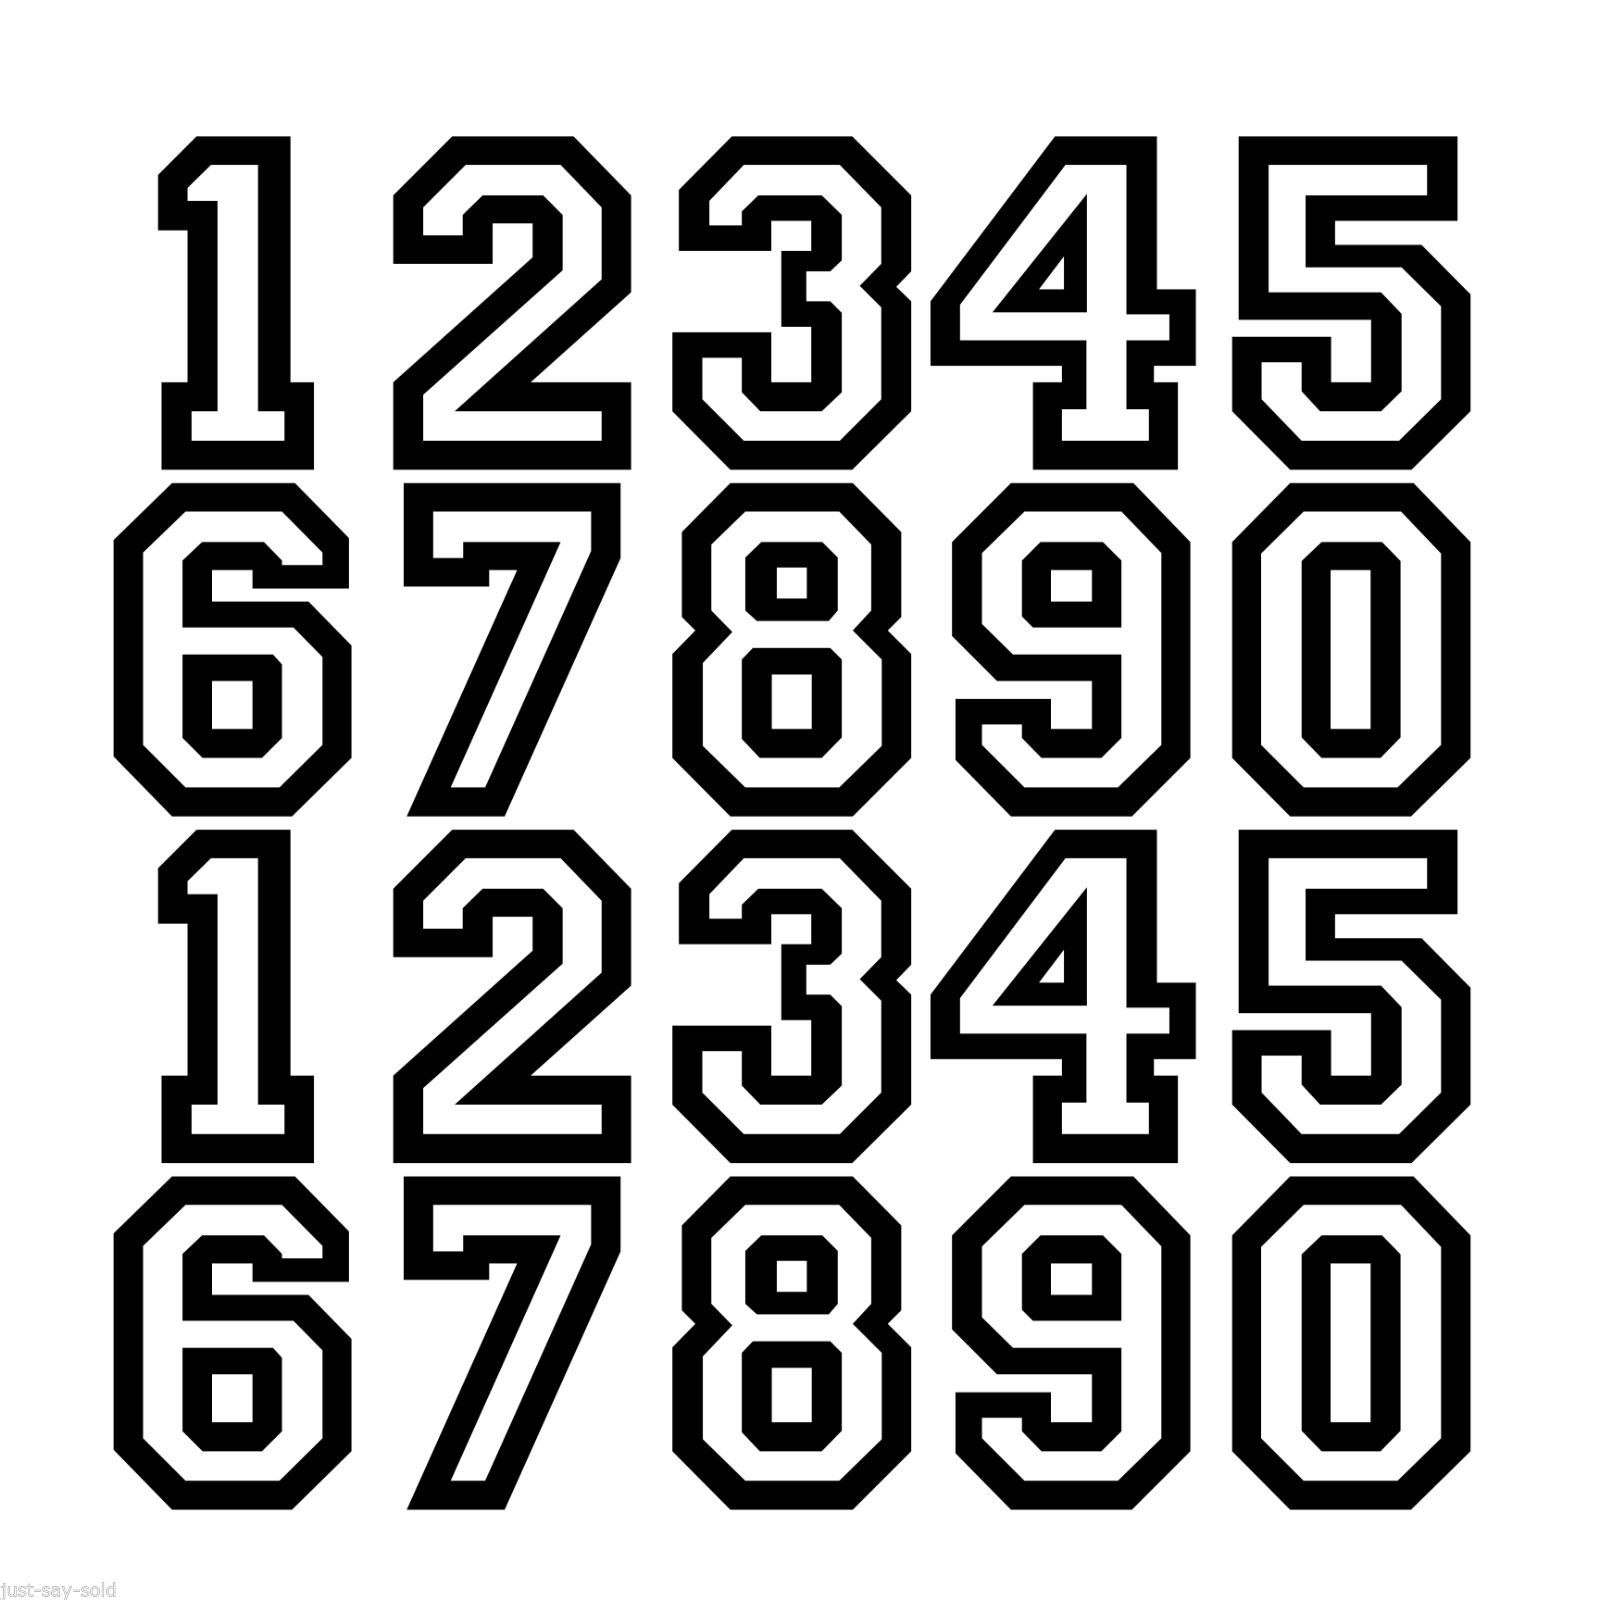 Cyberpunk numbers font фото 47